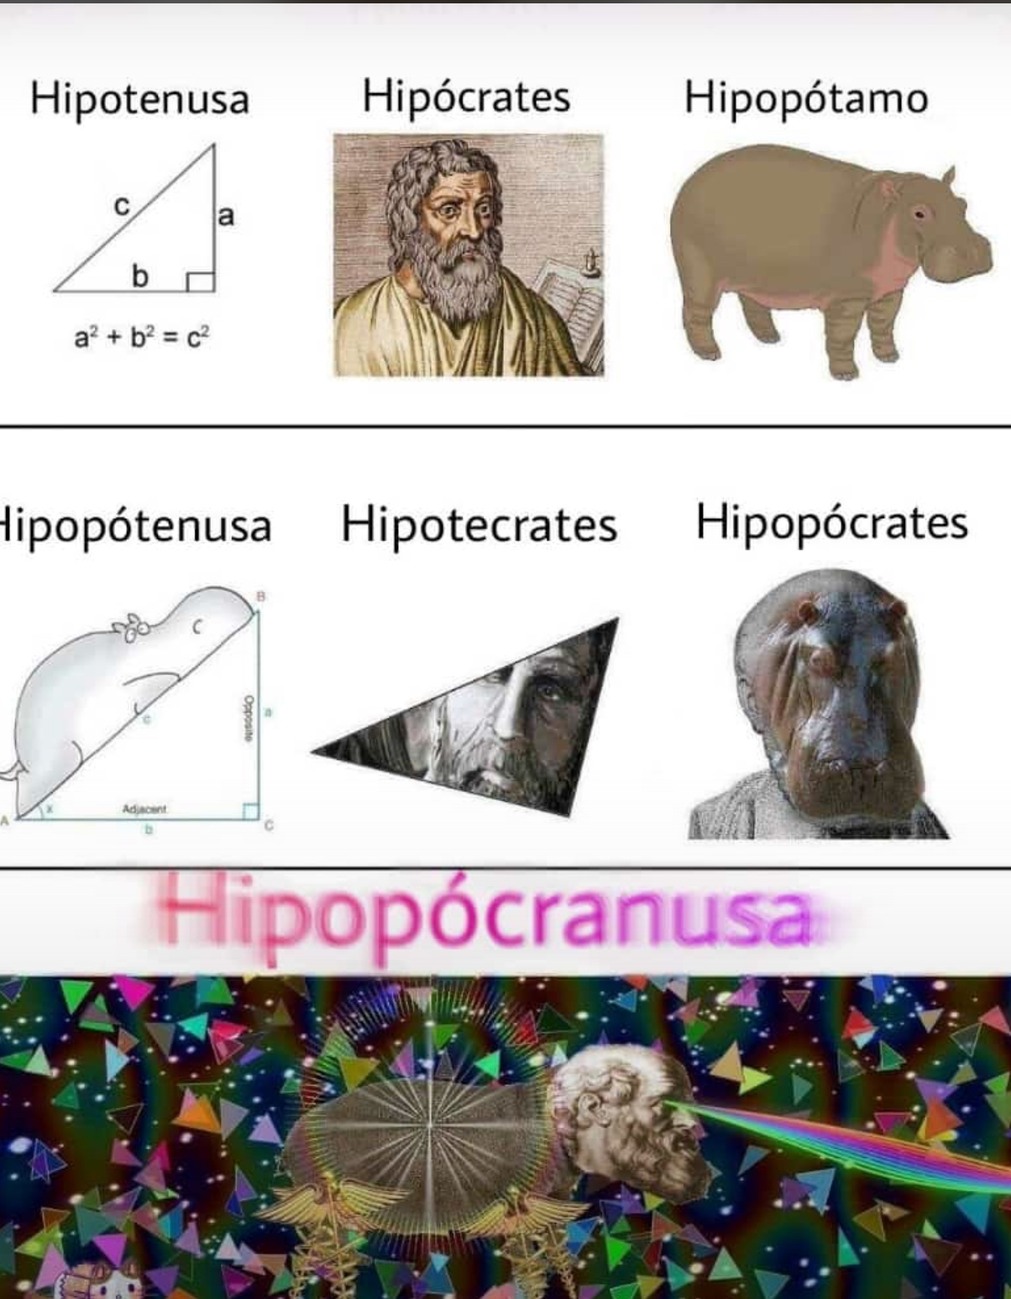 hipopopopopopopócranusa - meme